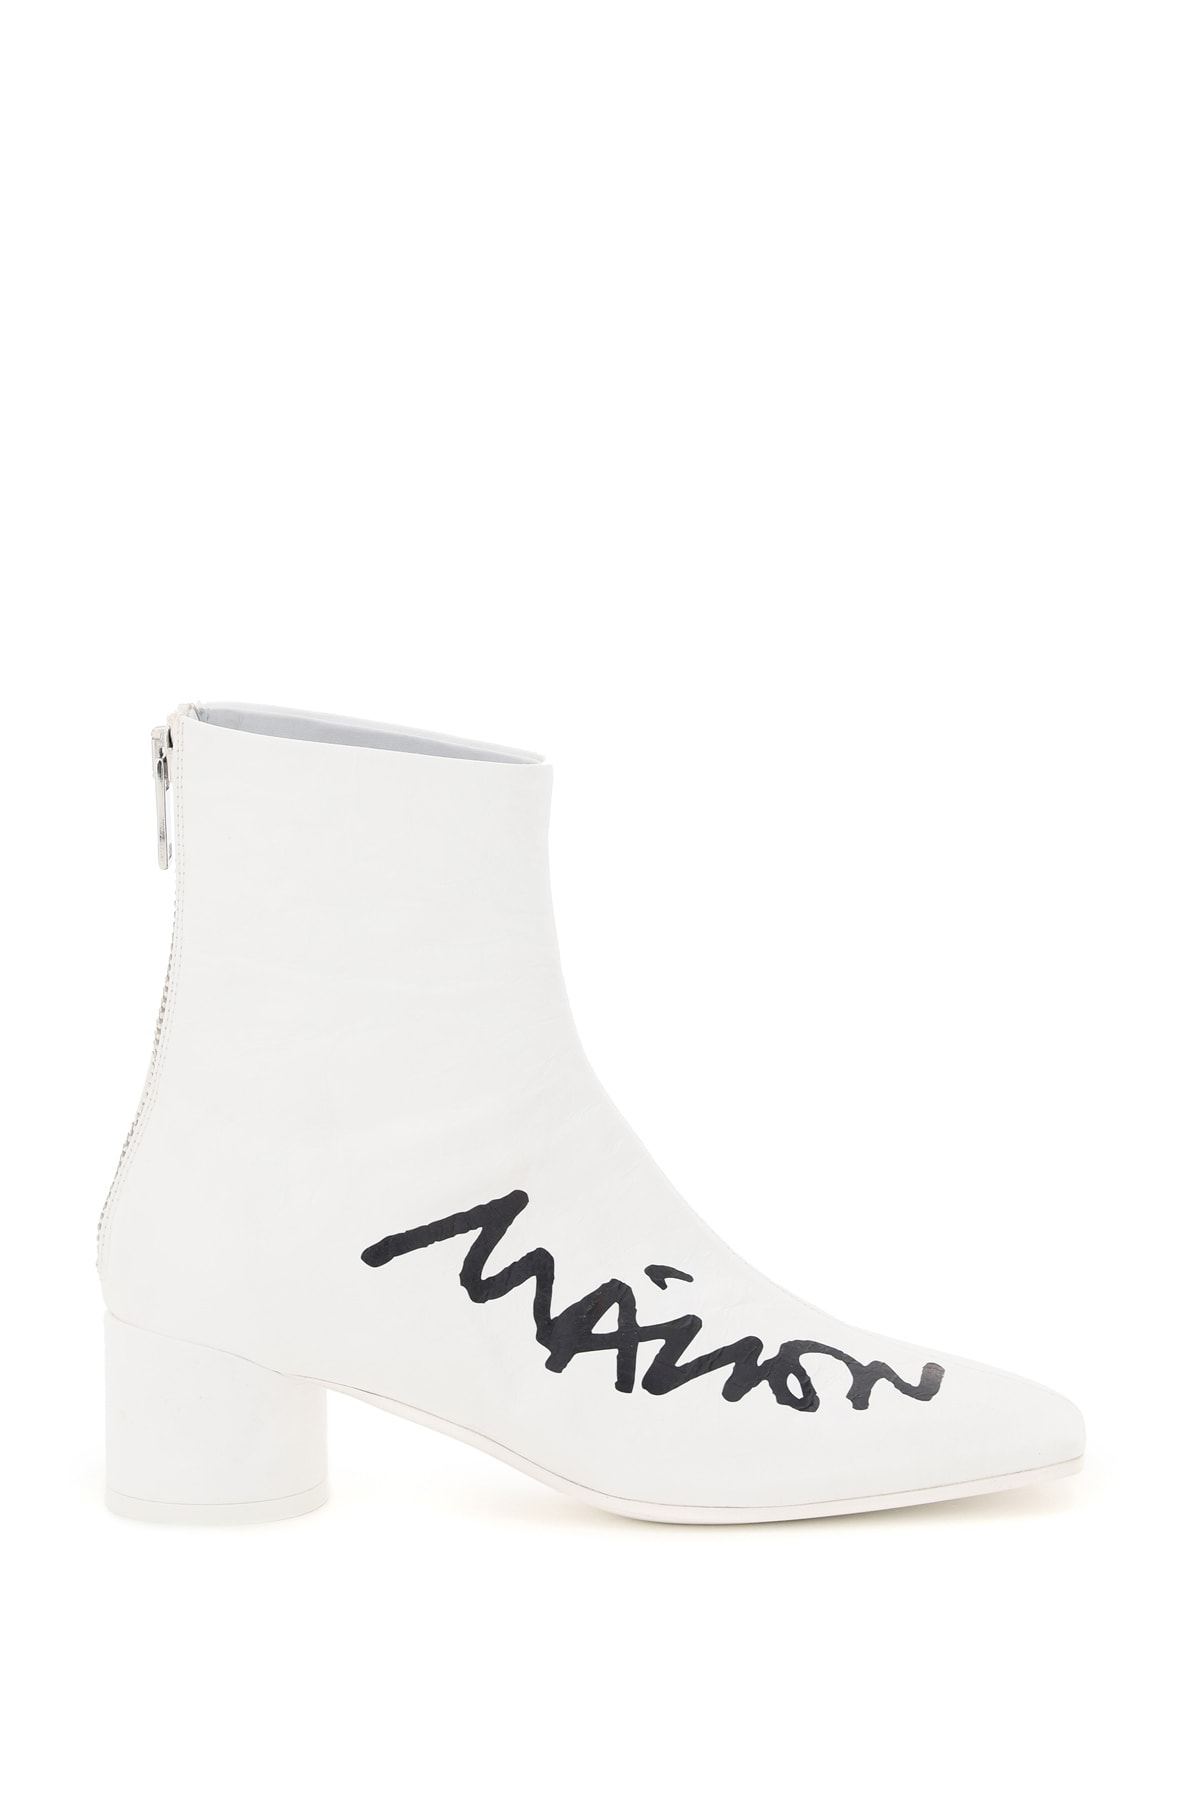 MM6 Maison Margiela Logo Print Ankle Boots